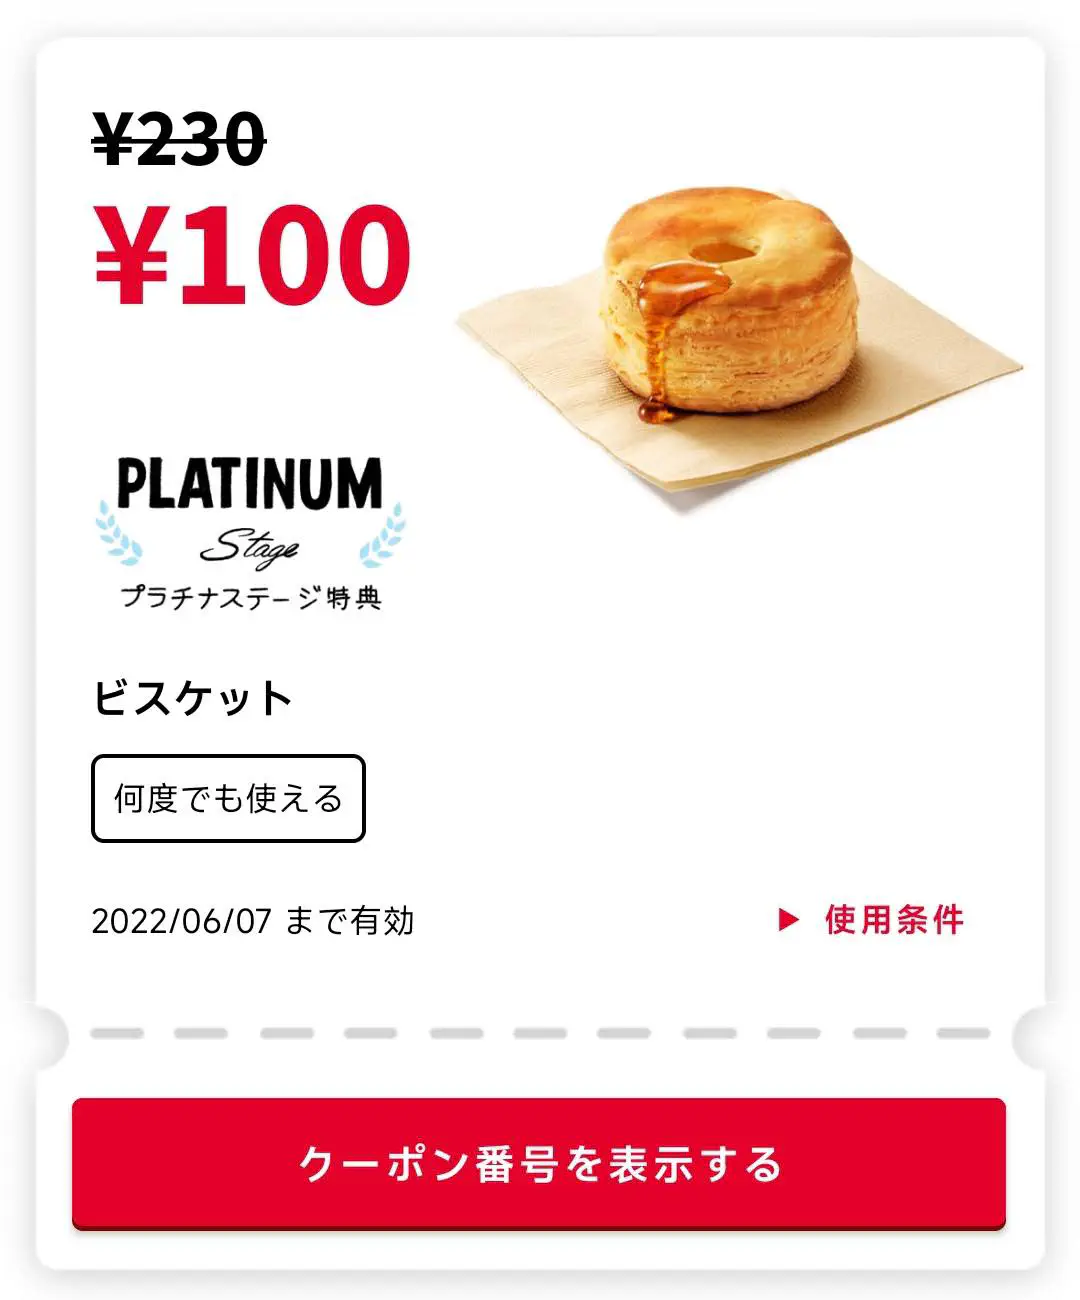 2022/06/07：松饼x1 = 100 日元